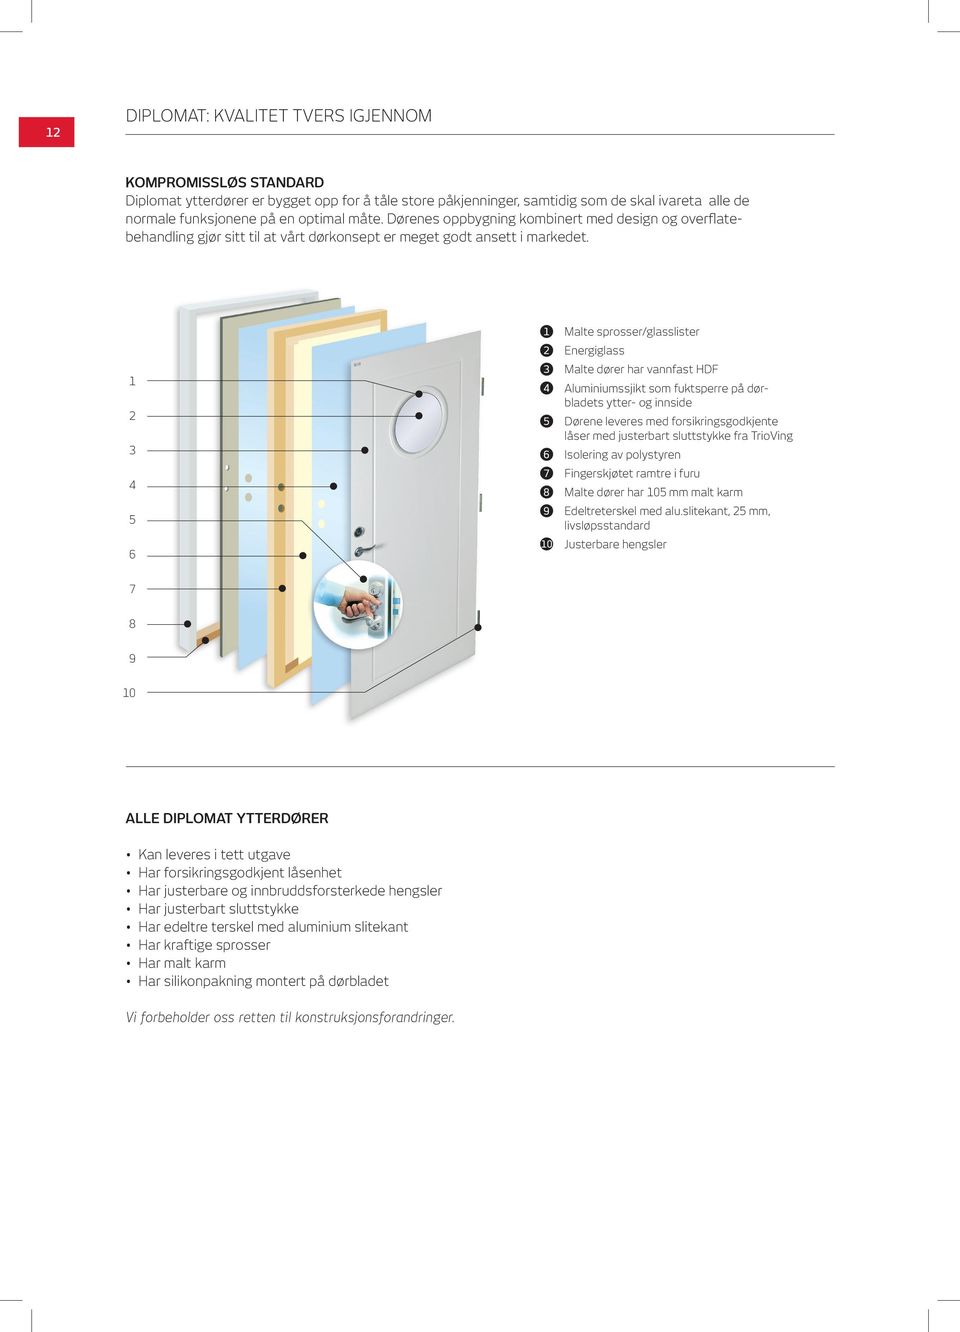 1 2 3 4 5 6 1 2 3 4 5 6 7 8 9 10 Malte sprosser/glasslister Energiglass Malte dører har vannfast HDF Aluminiumssjikt som fuktsperre på dørbladets ytter- og innside Dørene leveres med